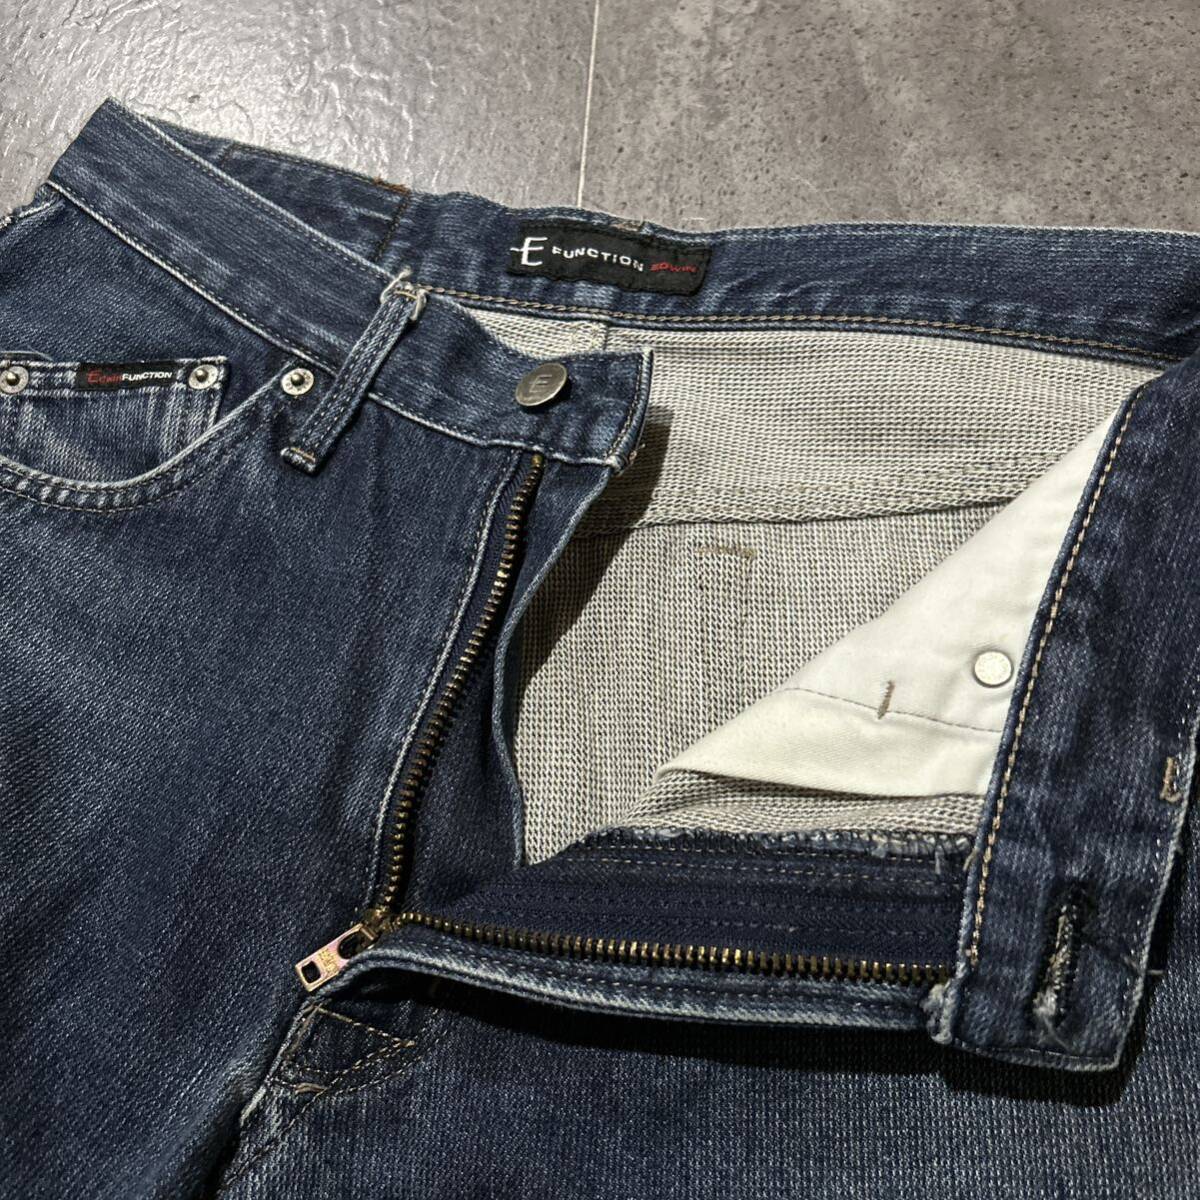 V # сделано в Японии \' популярный модель \' EDWIN Edwin E FUNCTION функция EZ503 Denim брюки / джинсы W32 L33 мужской джентльмен одежда низ 